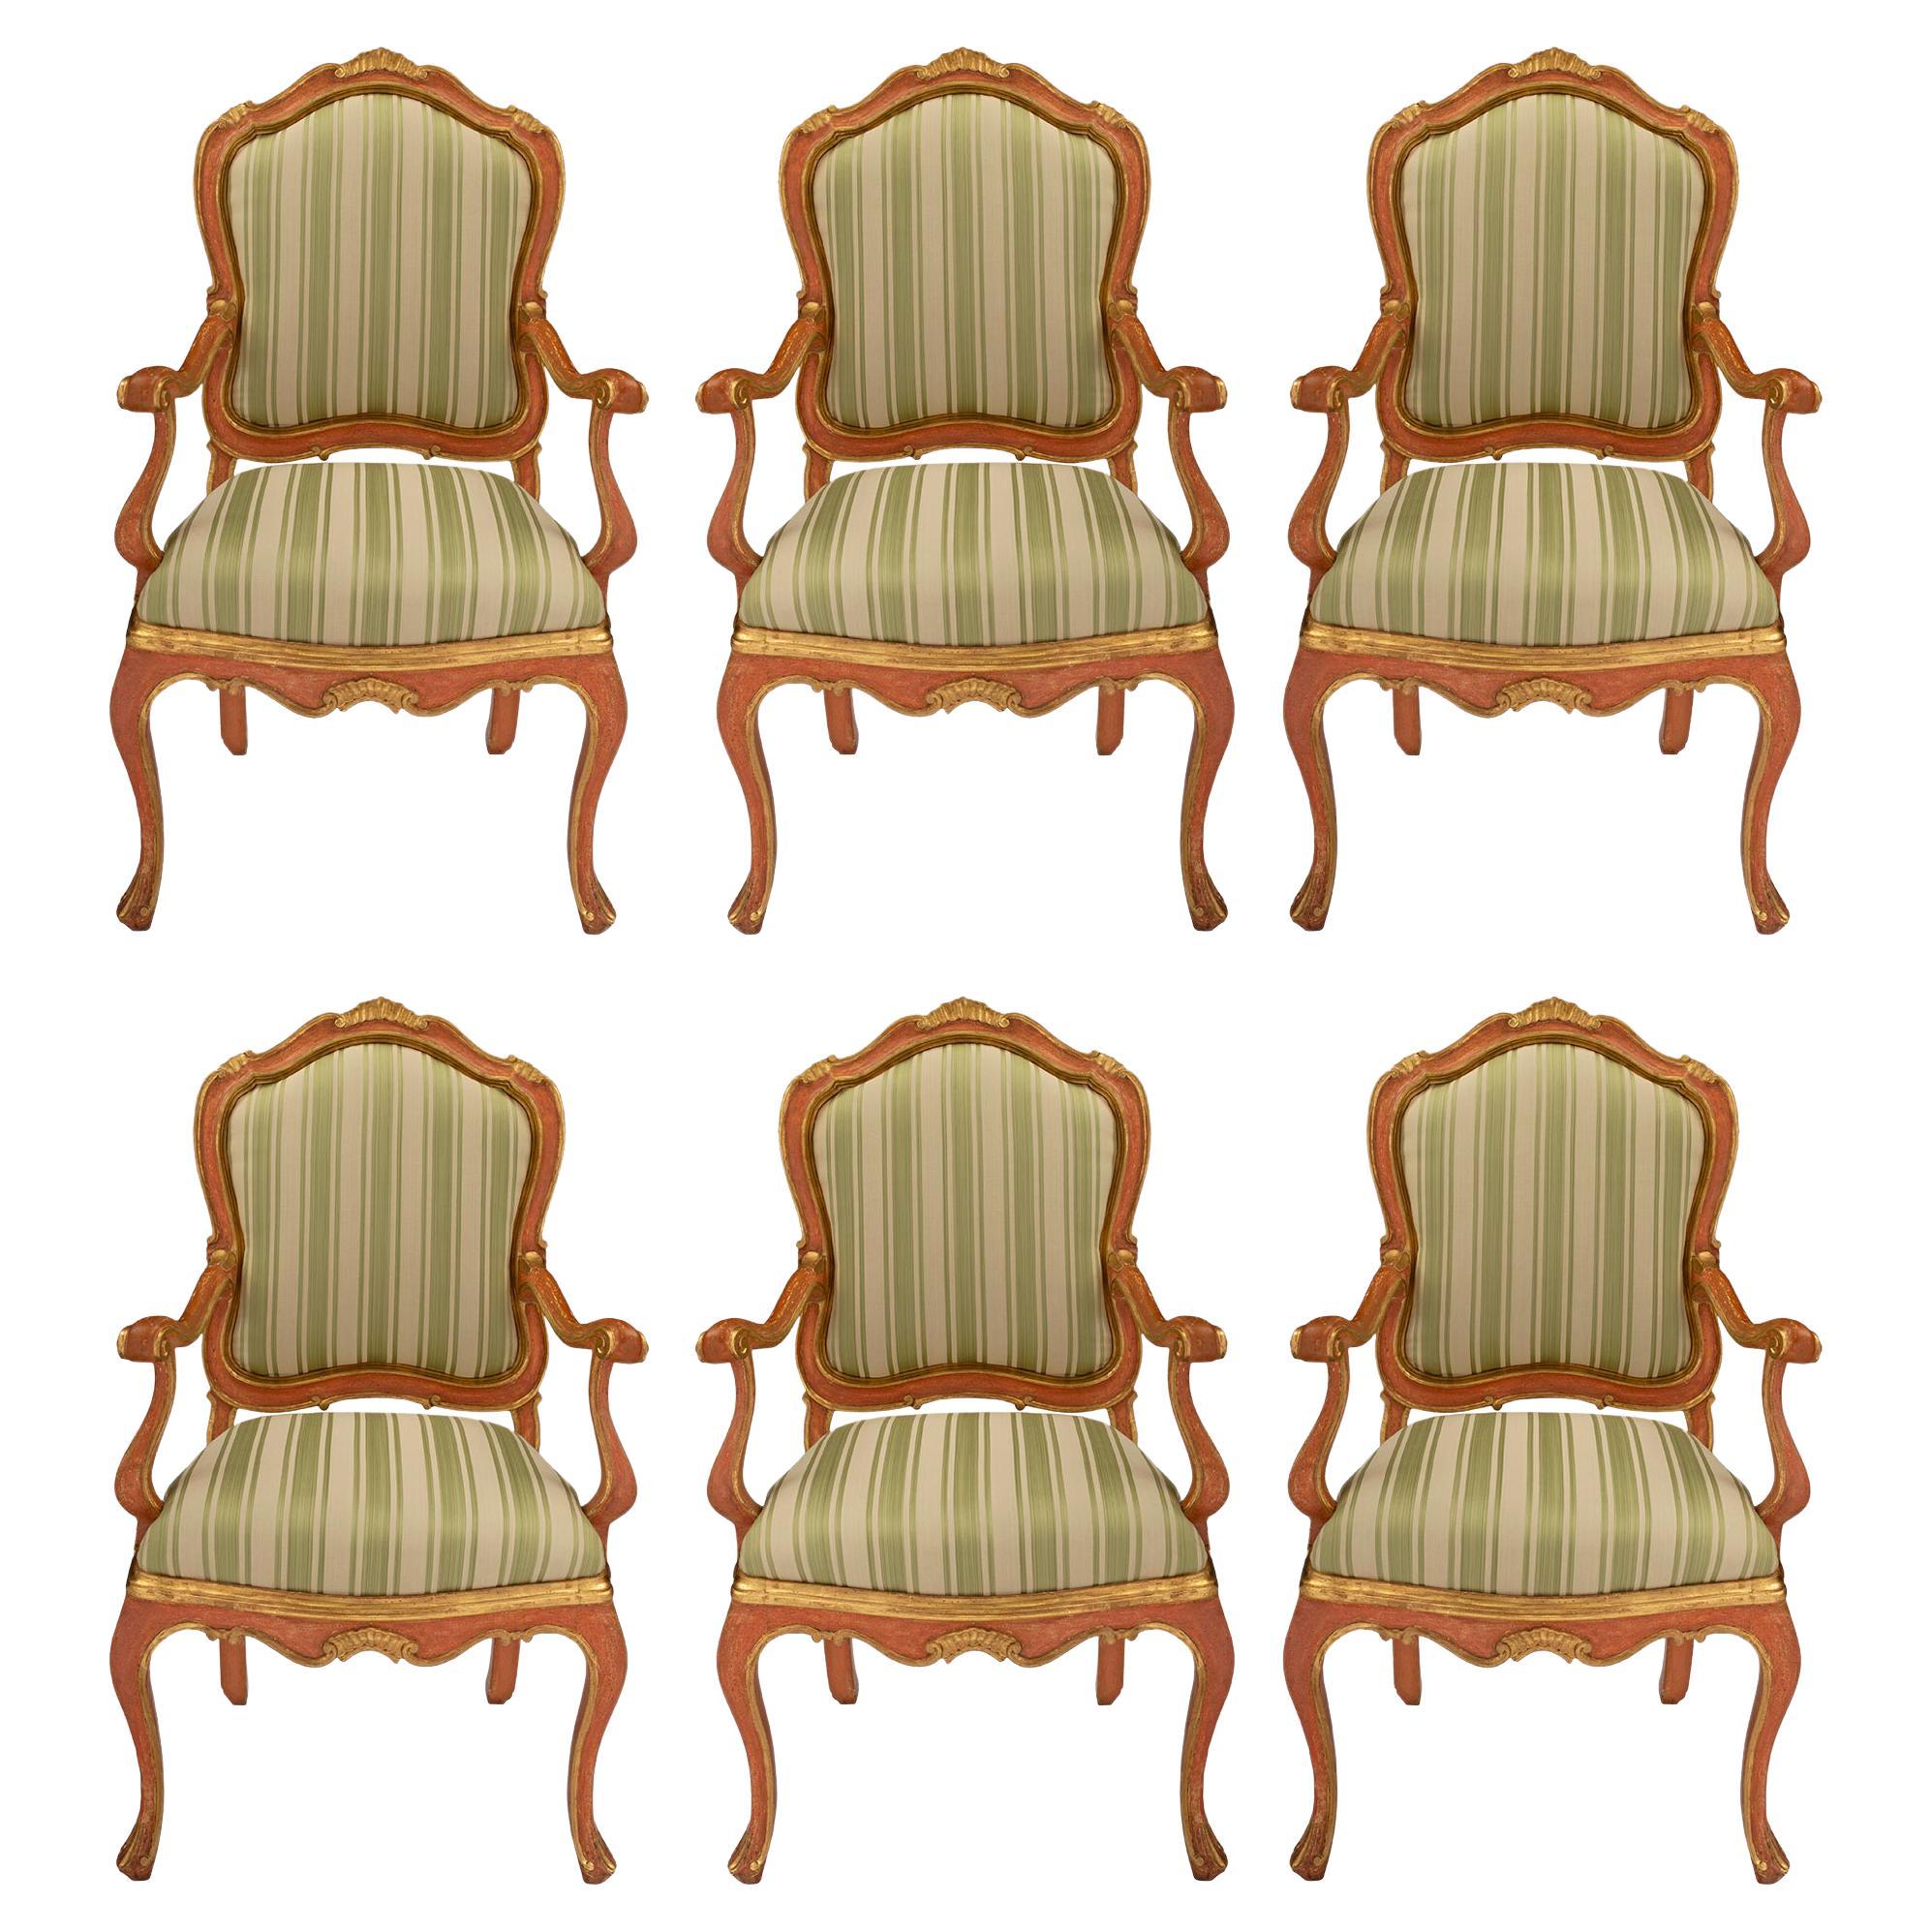 Ensemble de six fauteuils vénitiens italiens du 18ème siècle en bois polychrome et doré